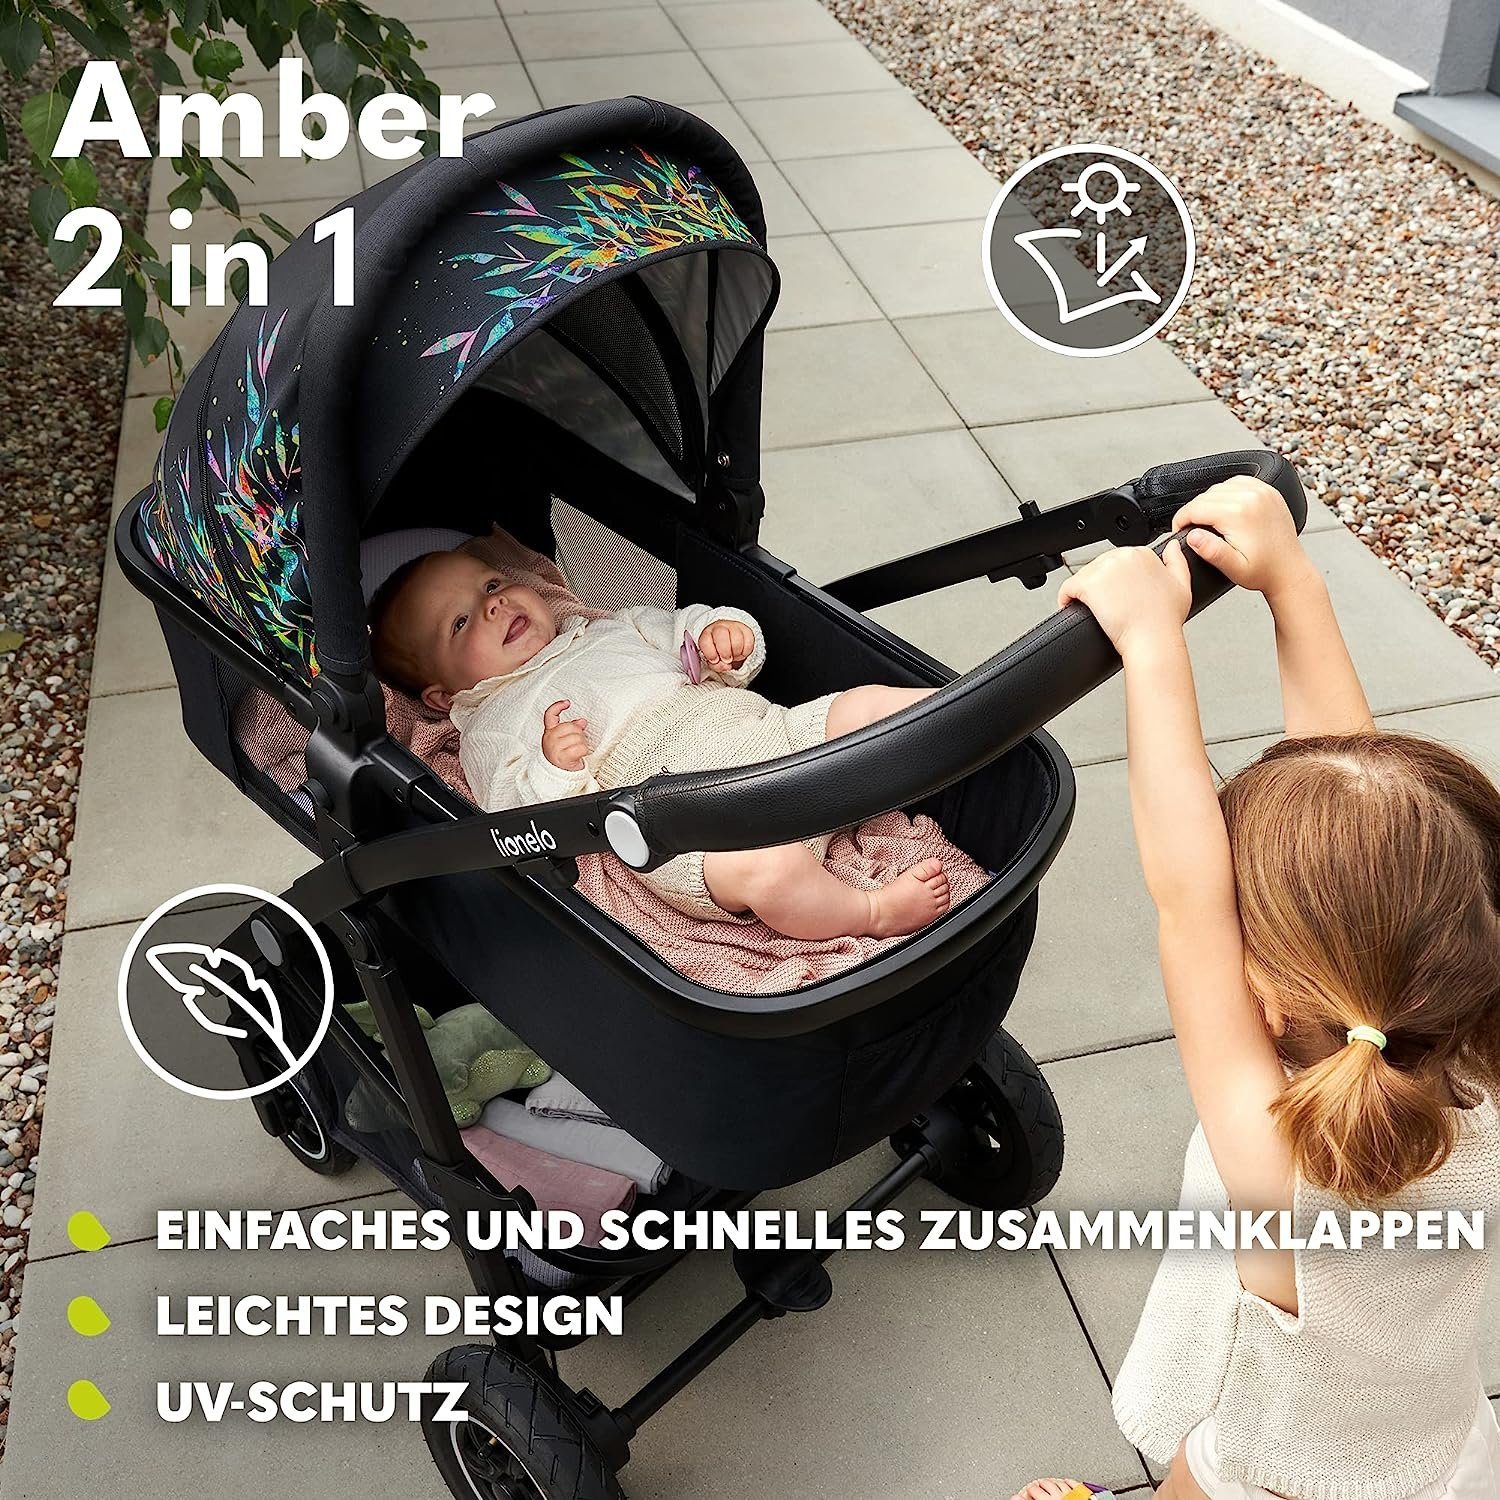 Tasche Amber, Moskitonetz Regenschutz Schutzüberzug Grau 2in1 lionelo Kombi-Kinderwagen